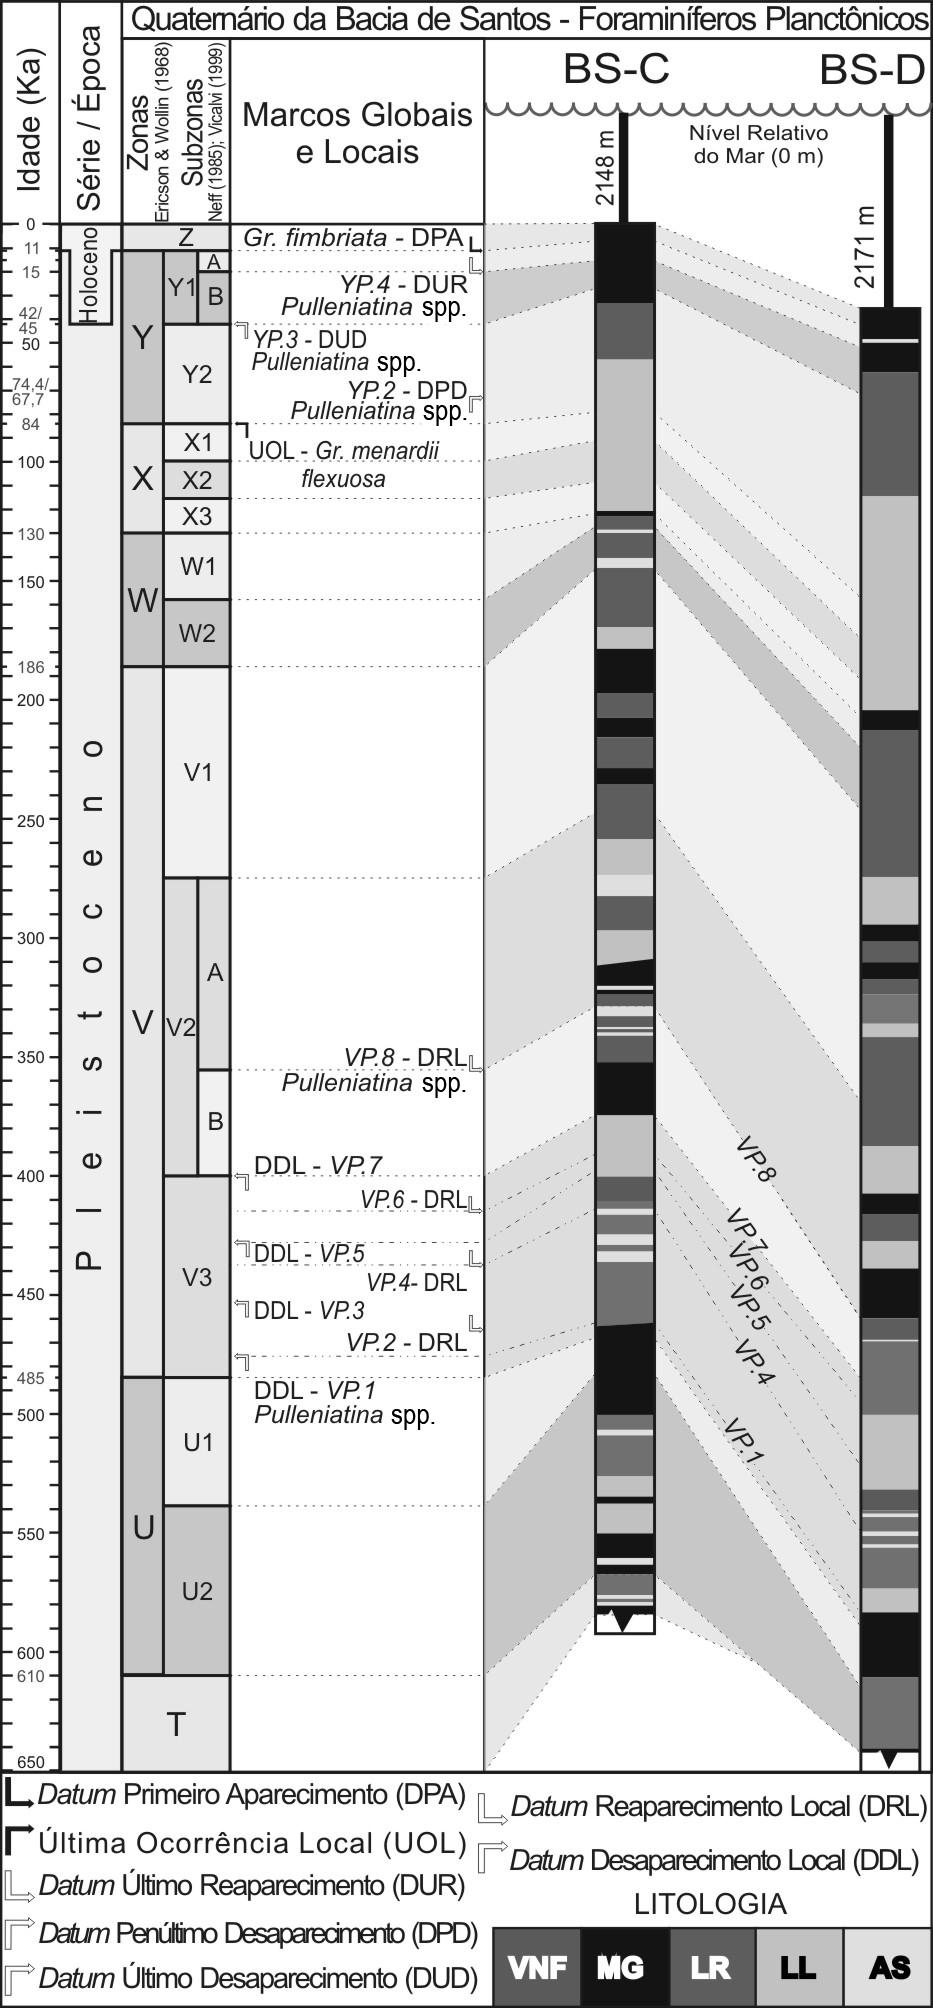 184 REVISTA BRASILEIRA DE PALEONTOLOGIA, 15(2), 2012 A Subzona Y1B é caracterizada pela ausência do plexo Pulleniatina. Seu limite inferior (Y2/Y1B) é marcado pelo biohorizonte YP.